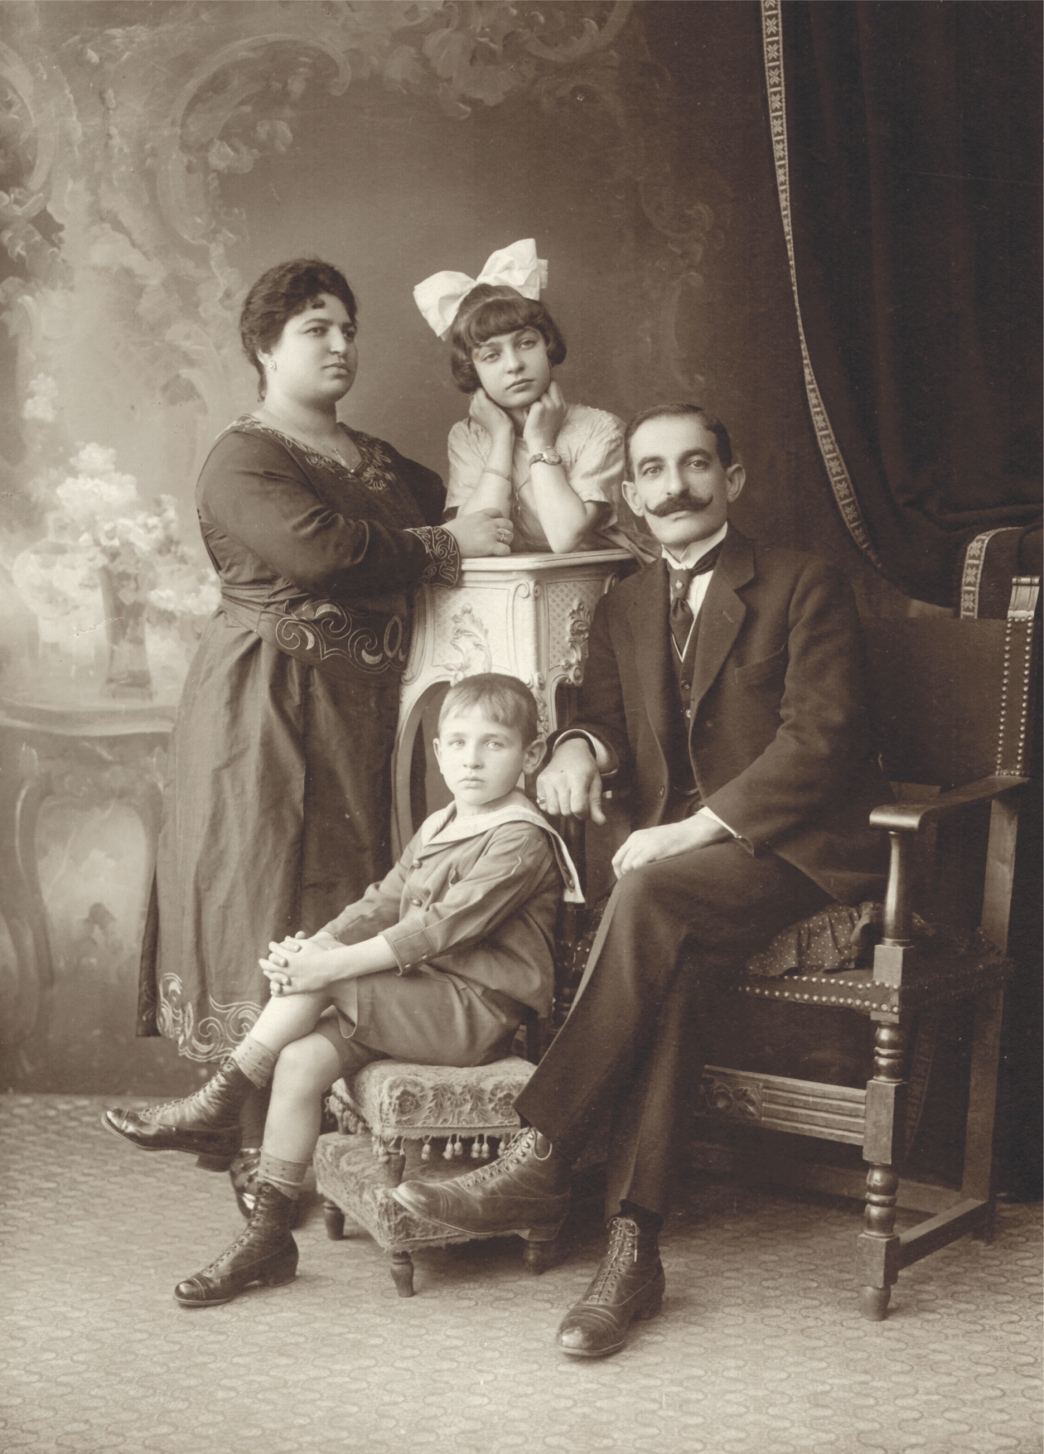 Տէր եւ Տիկին Յօվսէփ եւ Մարի Օգգաճեաններ, որդին՝ Գալուստ, դուստրը՝ Մարի, Կ.Պոլիս, 1920 թ.։